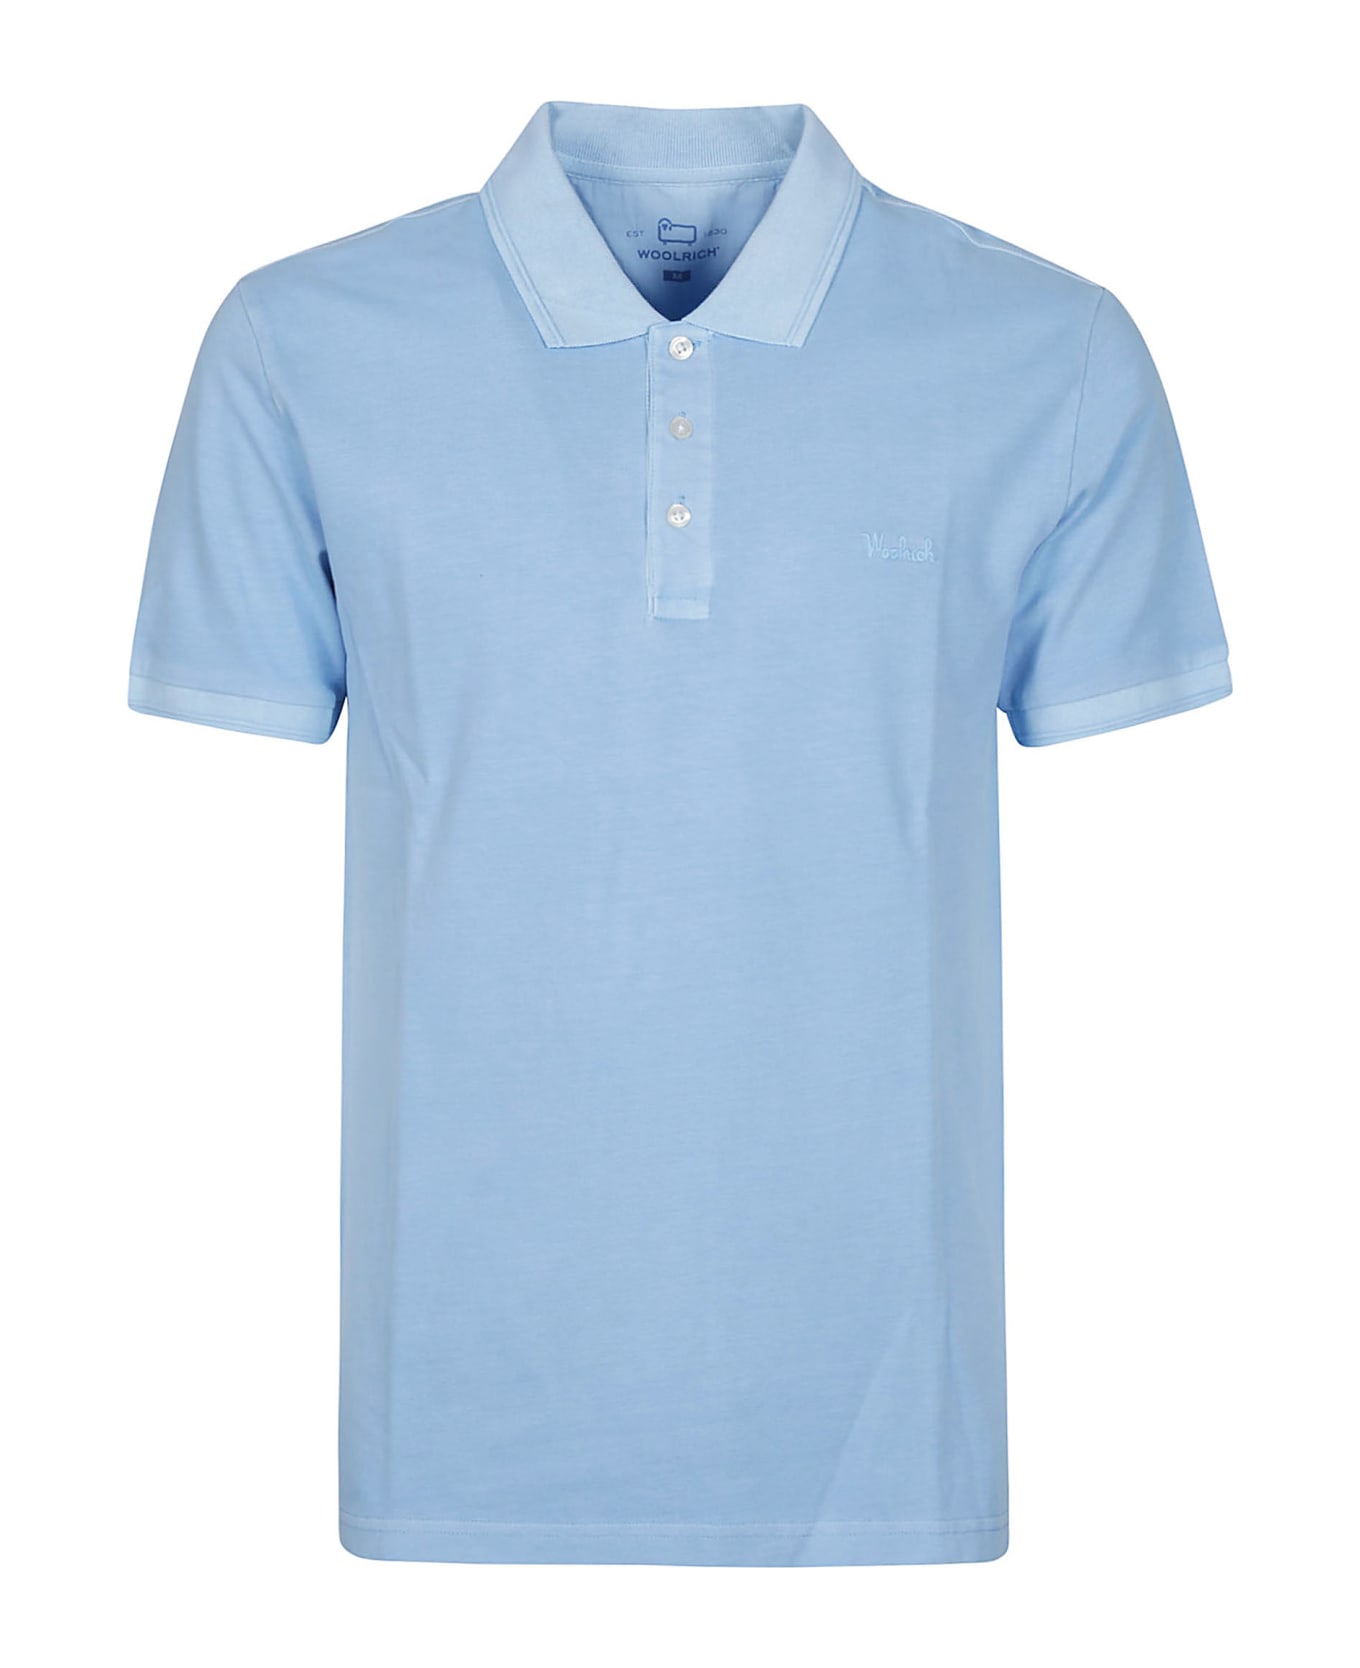 Woolrich Short Sleeve Mackinack Polo Shirt - LIGHT BLUE